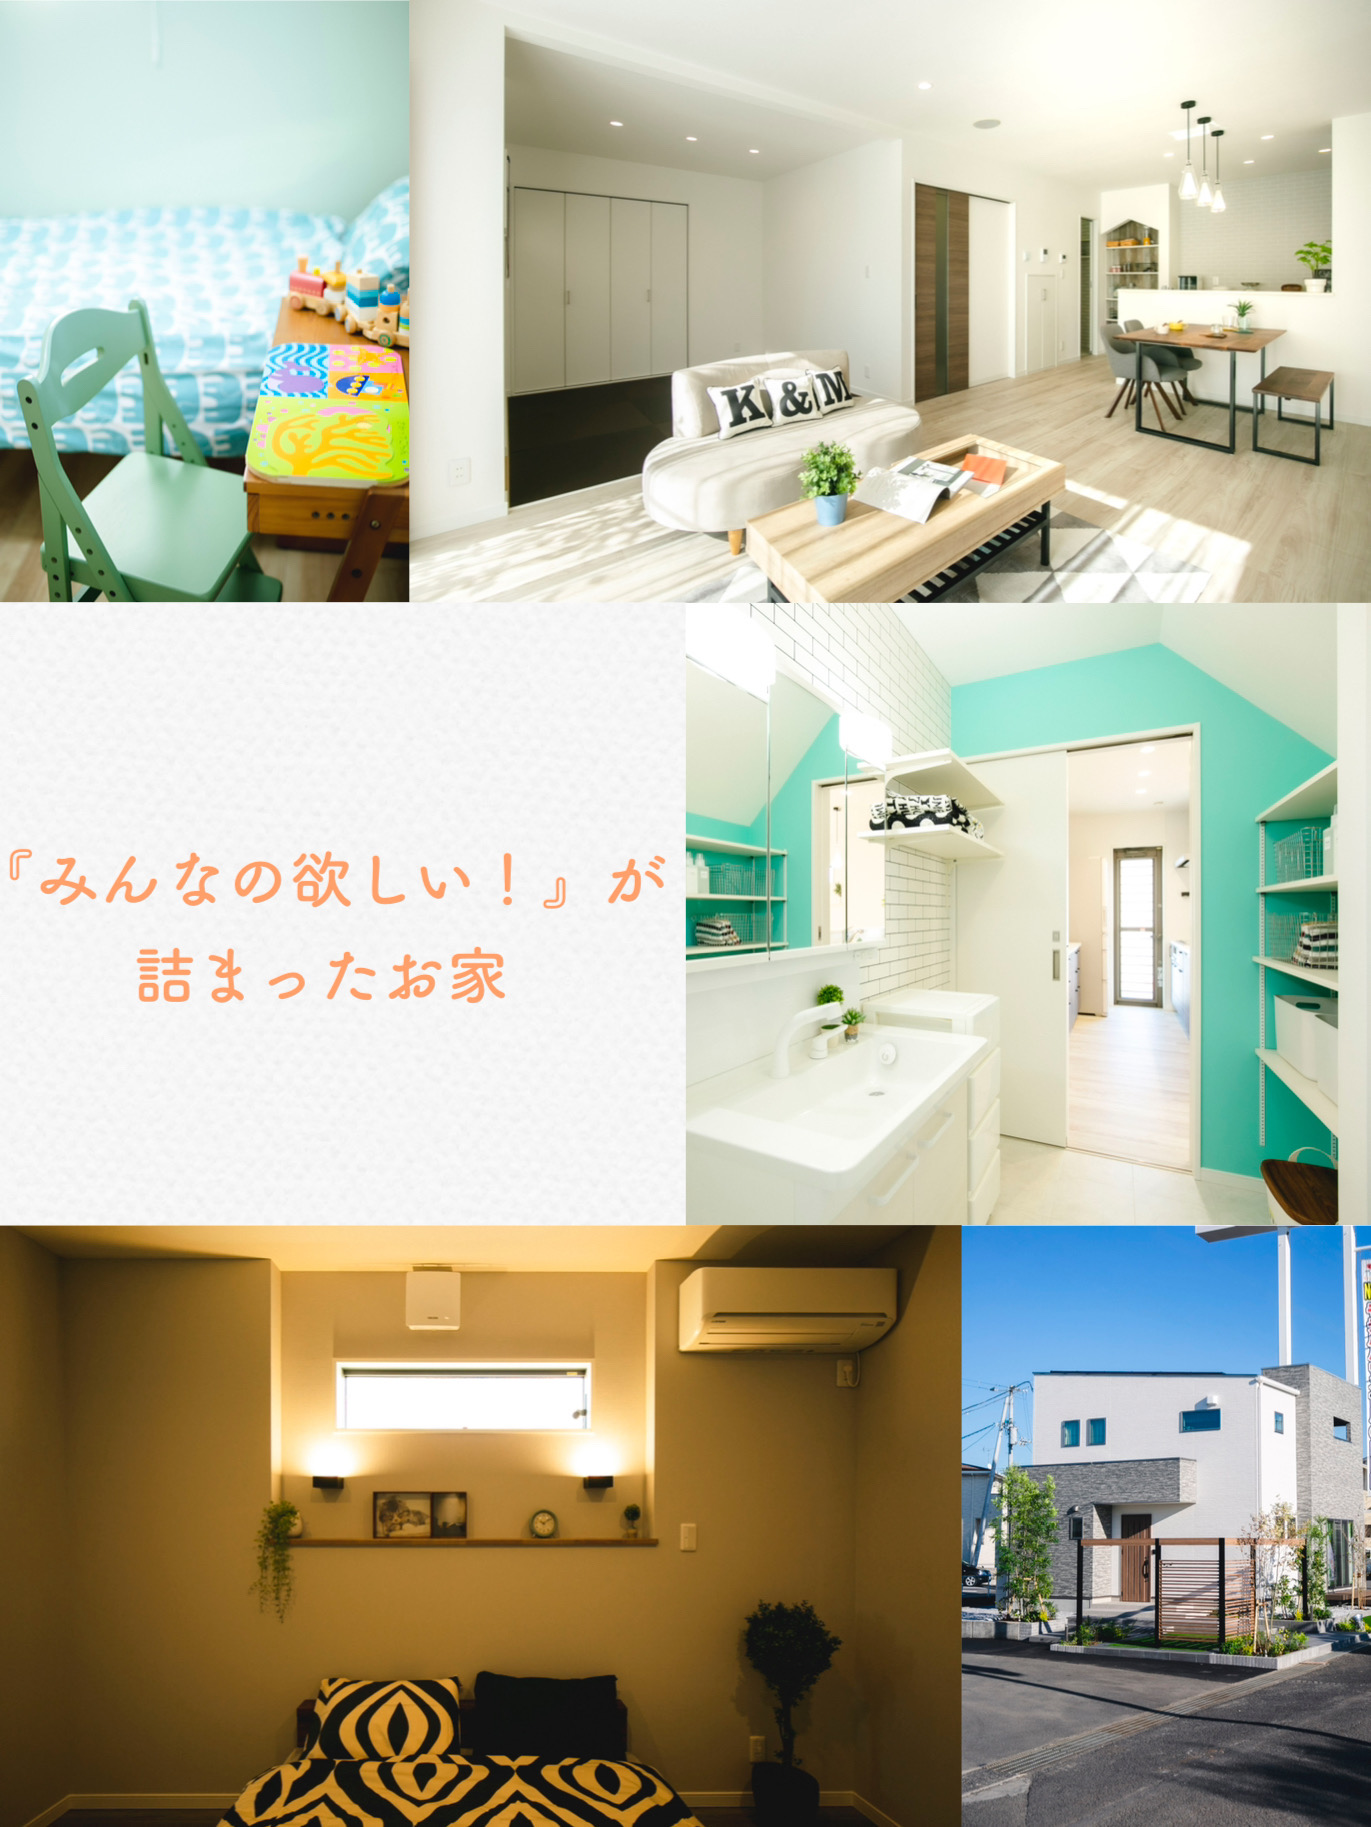 松山東店ではみんなの欲しいが詰まったお家を見学できます。